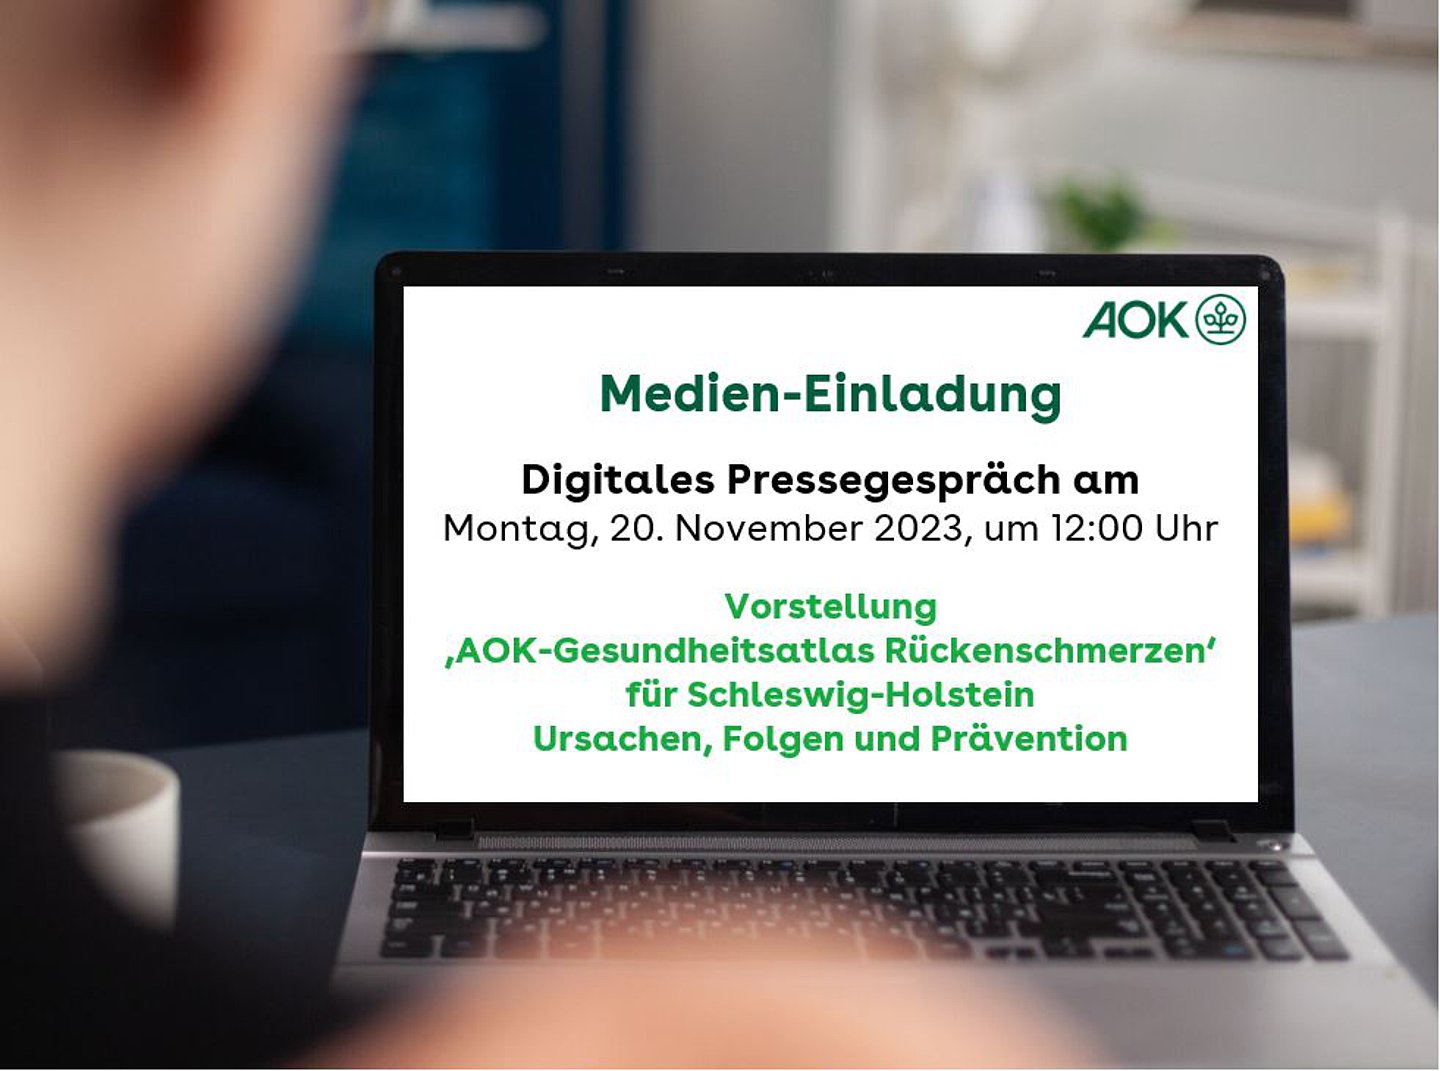 Foto: Medien-Einladung zum digitalen Pressegespräch am 20.11.2023 um 12 Uhr: Vorstellung  ‚AOK-Gesundheitsatlas Rückenschmerzen‘ für Schleswig-Holstein Ursachen, Folgen und Prävention.